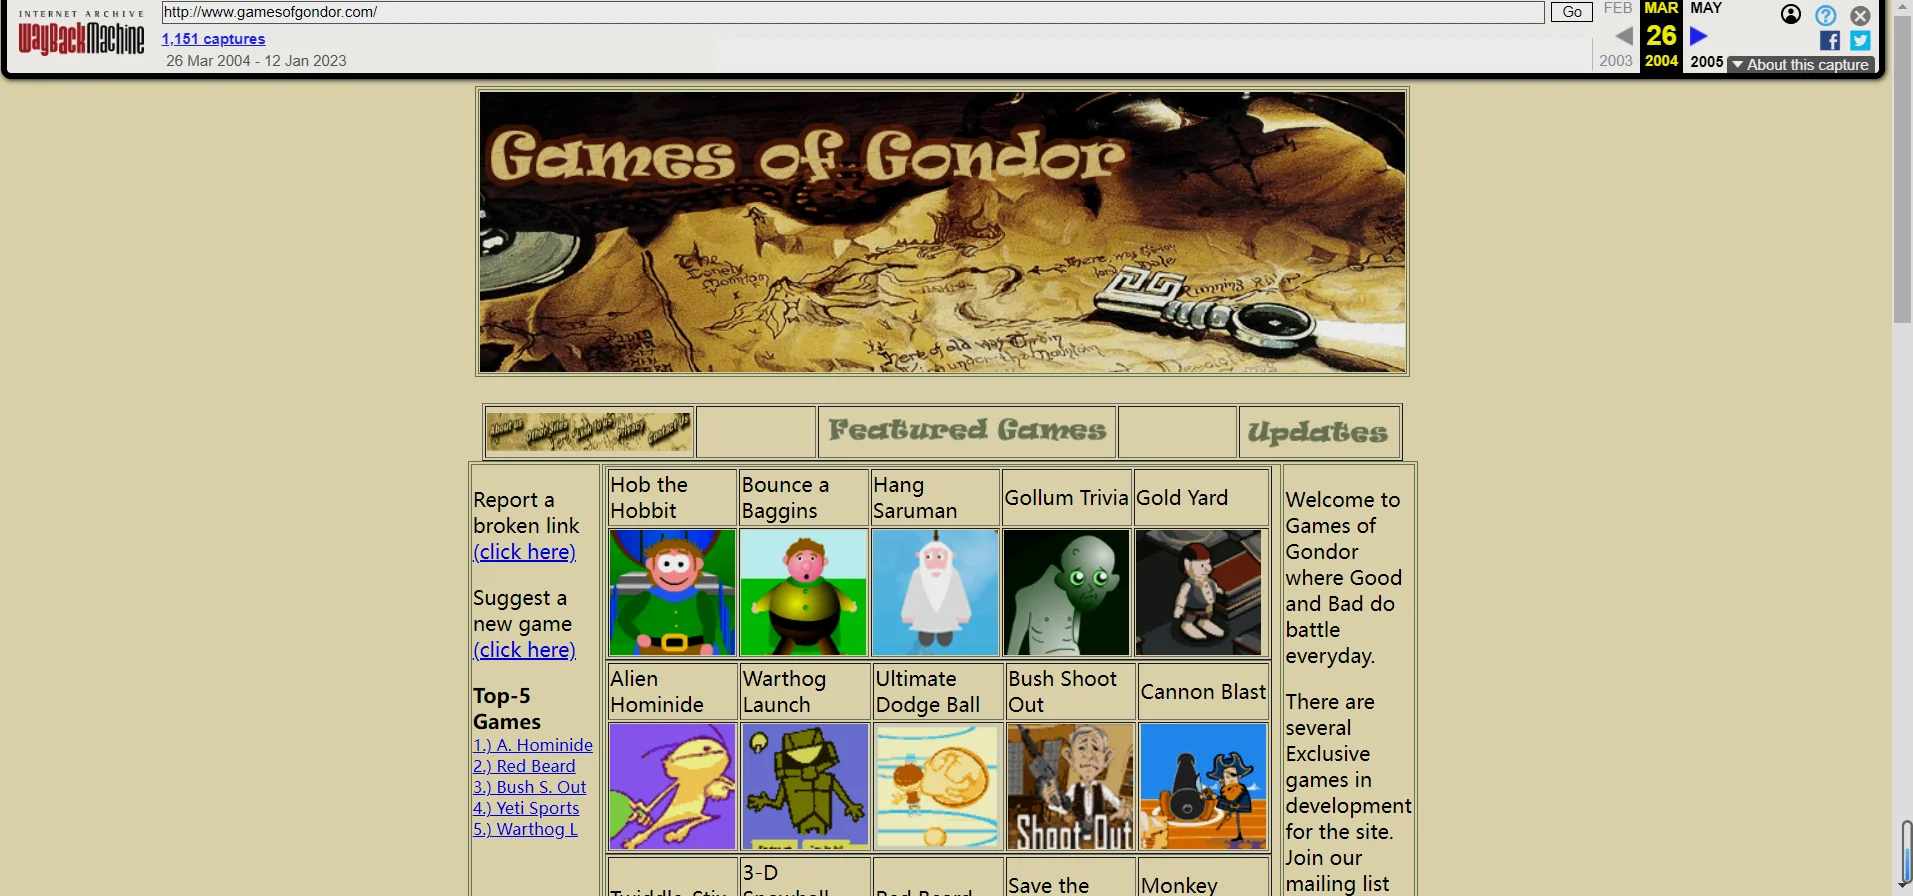 感谢网站时光机，这可能是当年“Games of Gondor”唯一几张留存下来的图片了